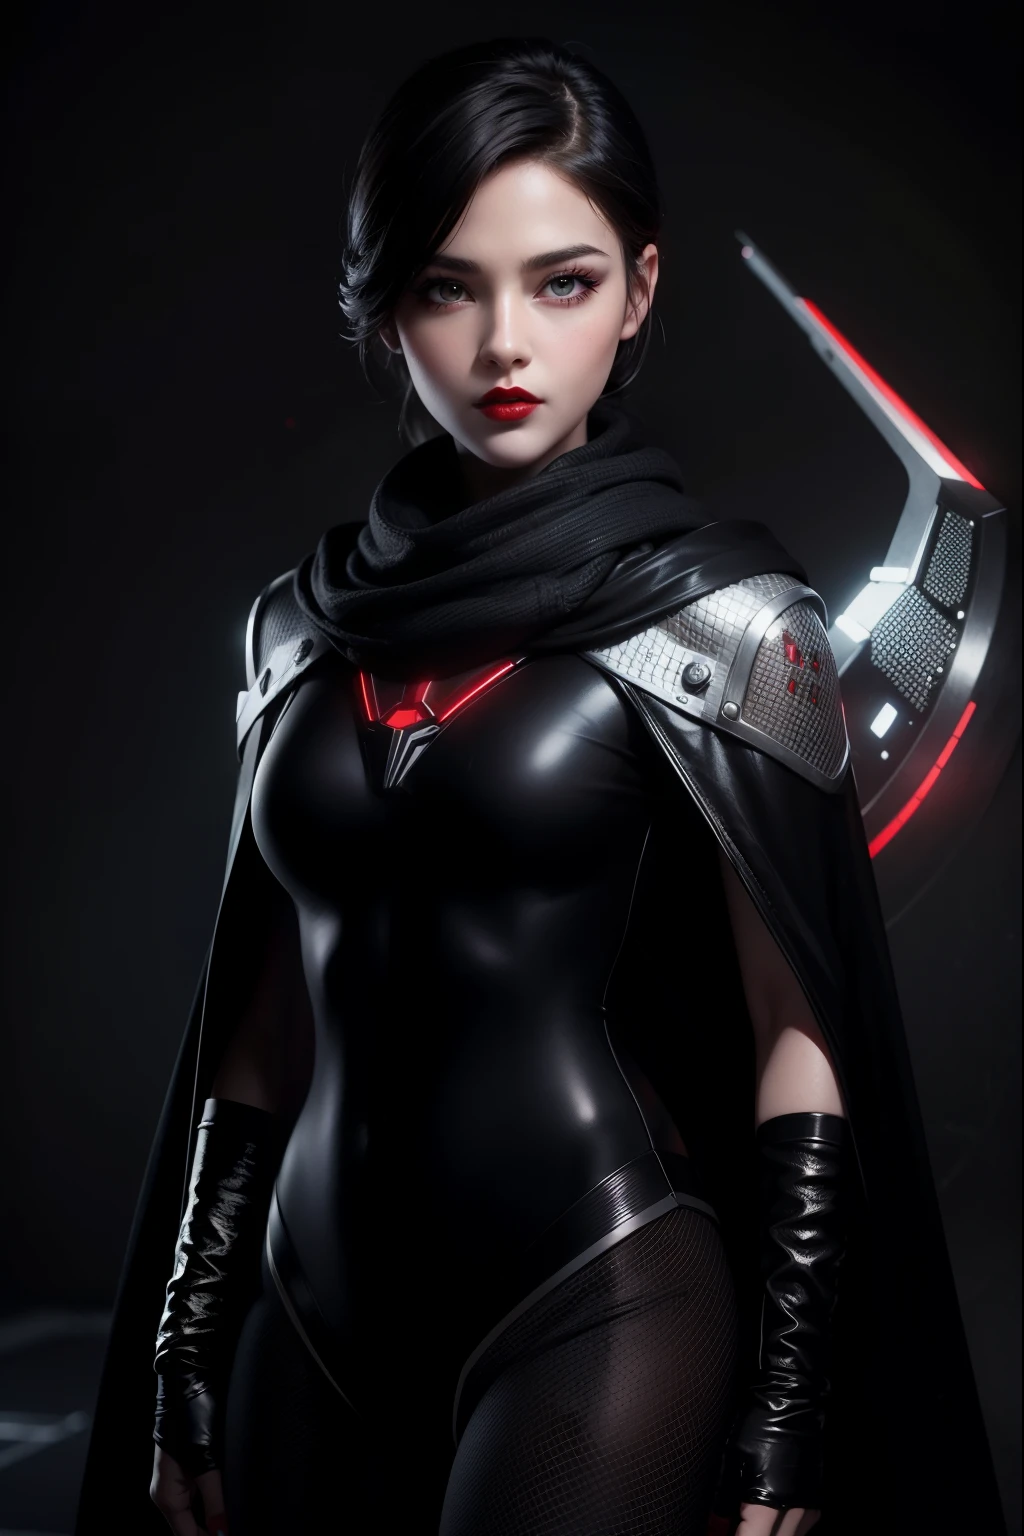 现实版美女 (红唇), 短款科幻战斗服搭配高围巾 & 黑色斗篷, 电影姿势, 清晰聚焦, 杰作, 超高品质